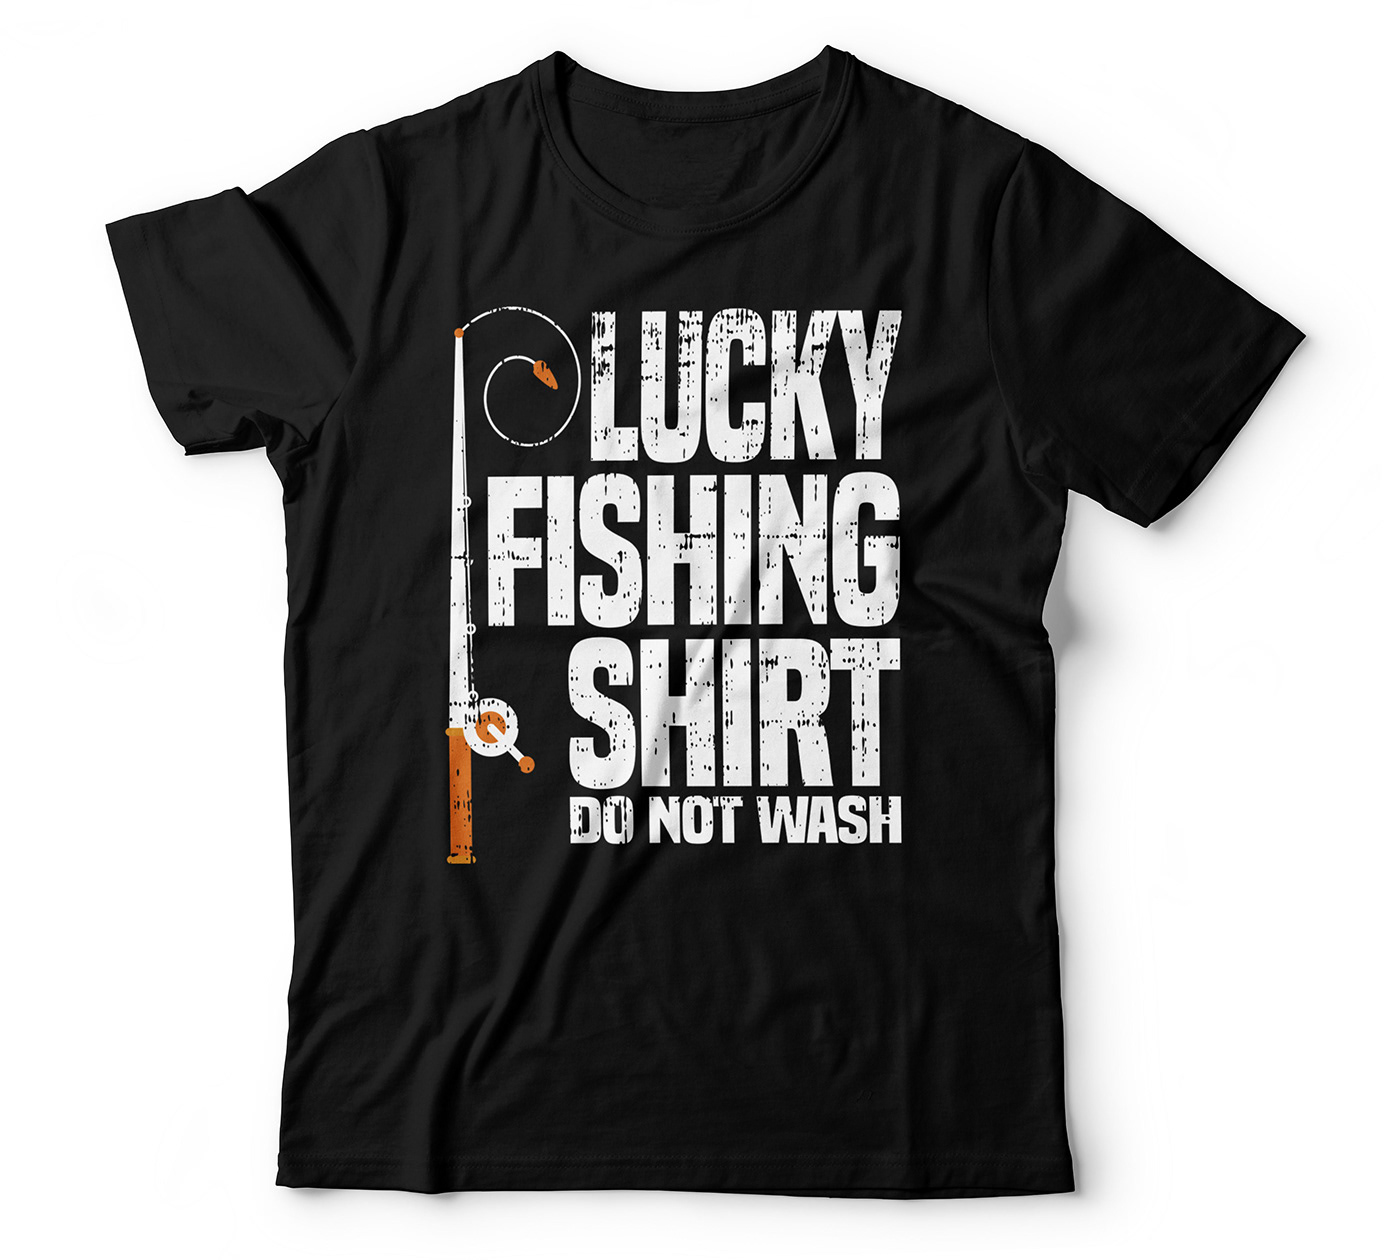 graphic design  T-Shirt Design shirt destign art merch by amazon teespring